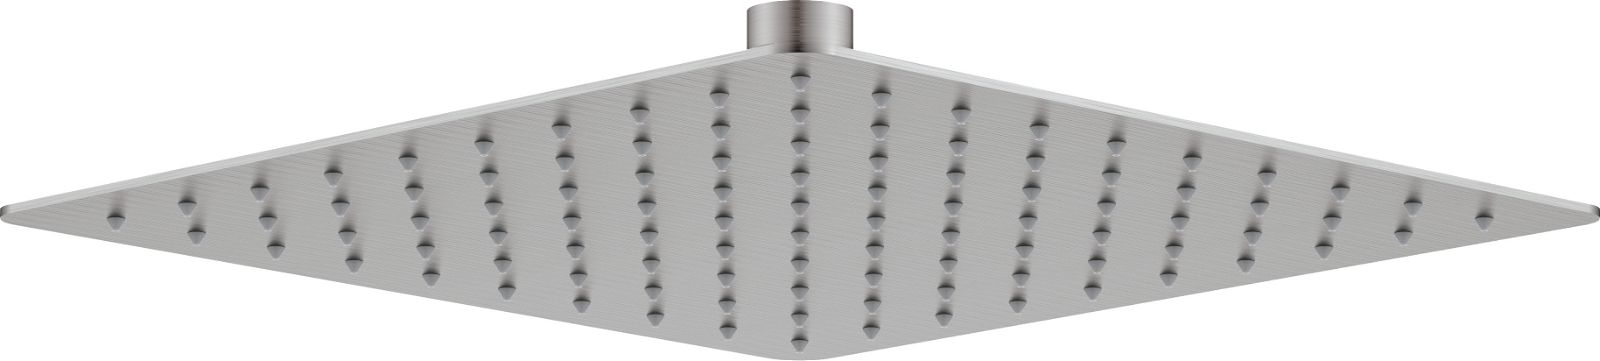 Zuhanyfej, acél - 250x250 mm - NAC_F02K - Główne zdjęcie produktowe